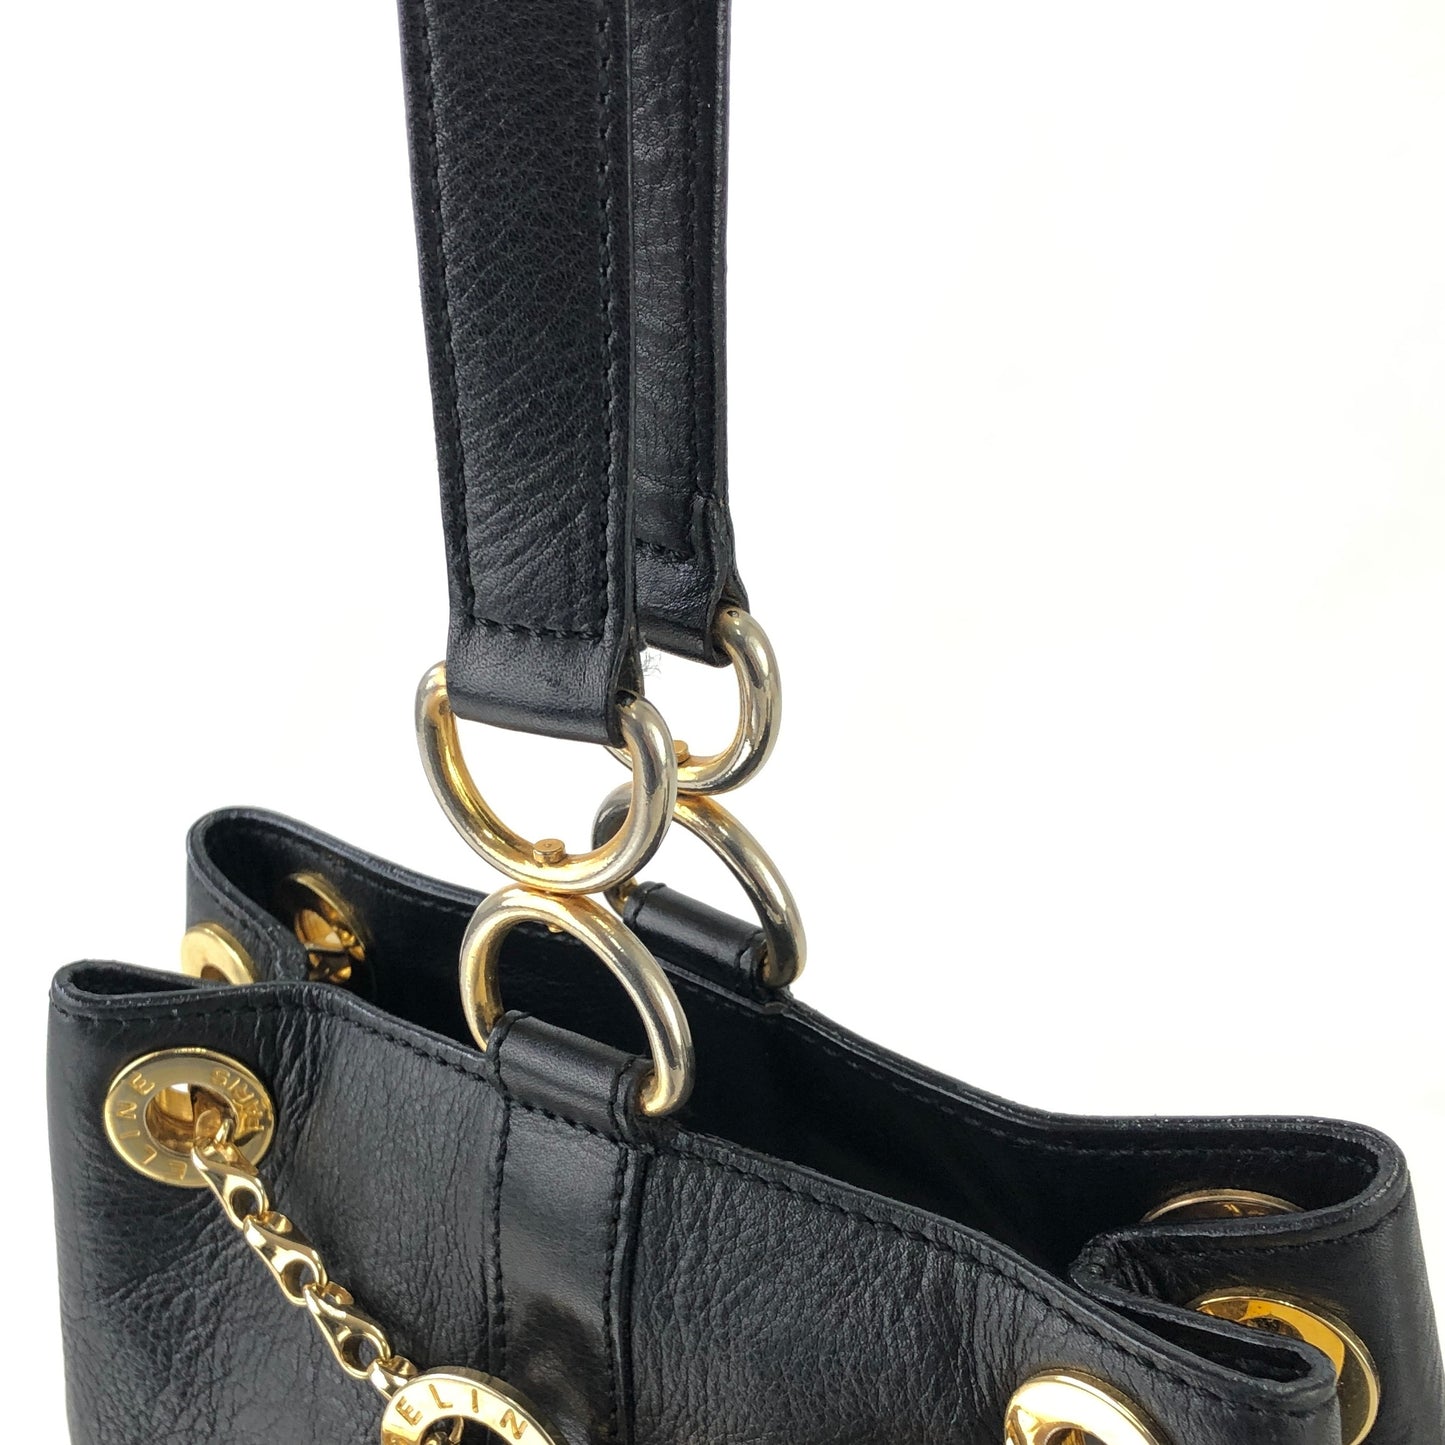 CELINE Toggle Chain Leather Crossbody Shoulder bag Black Vintage s2ztup